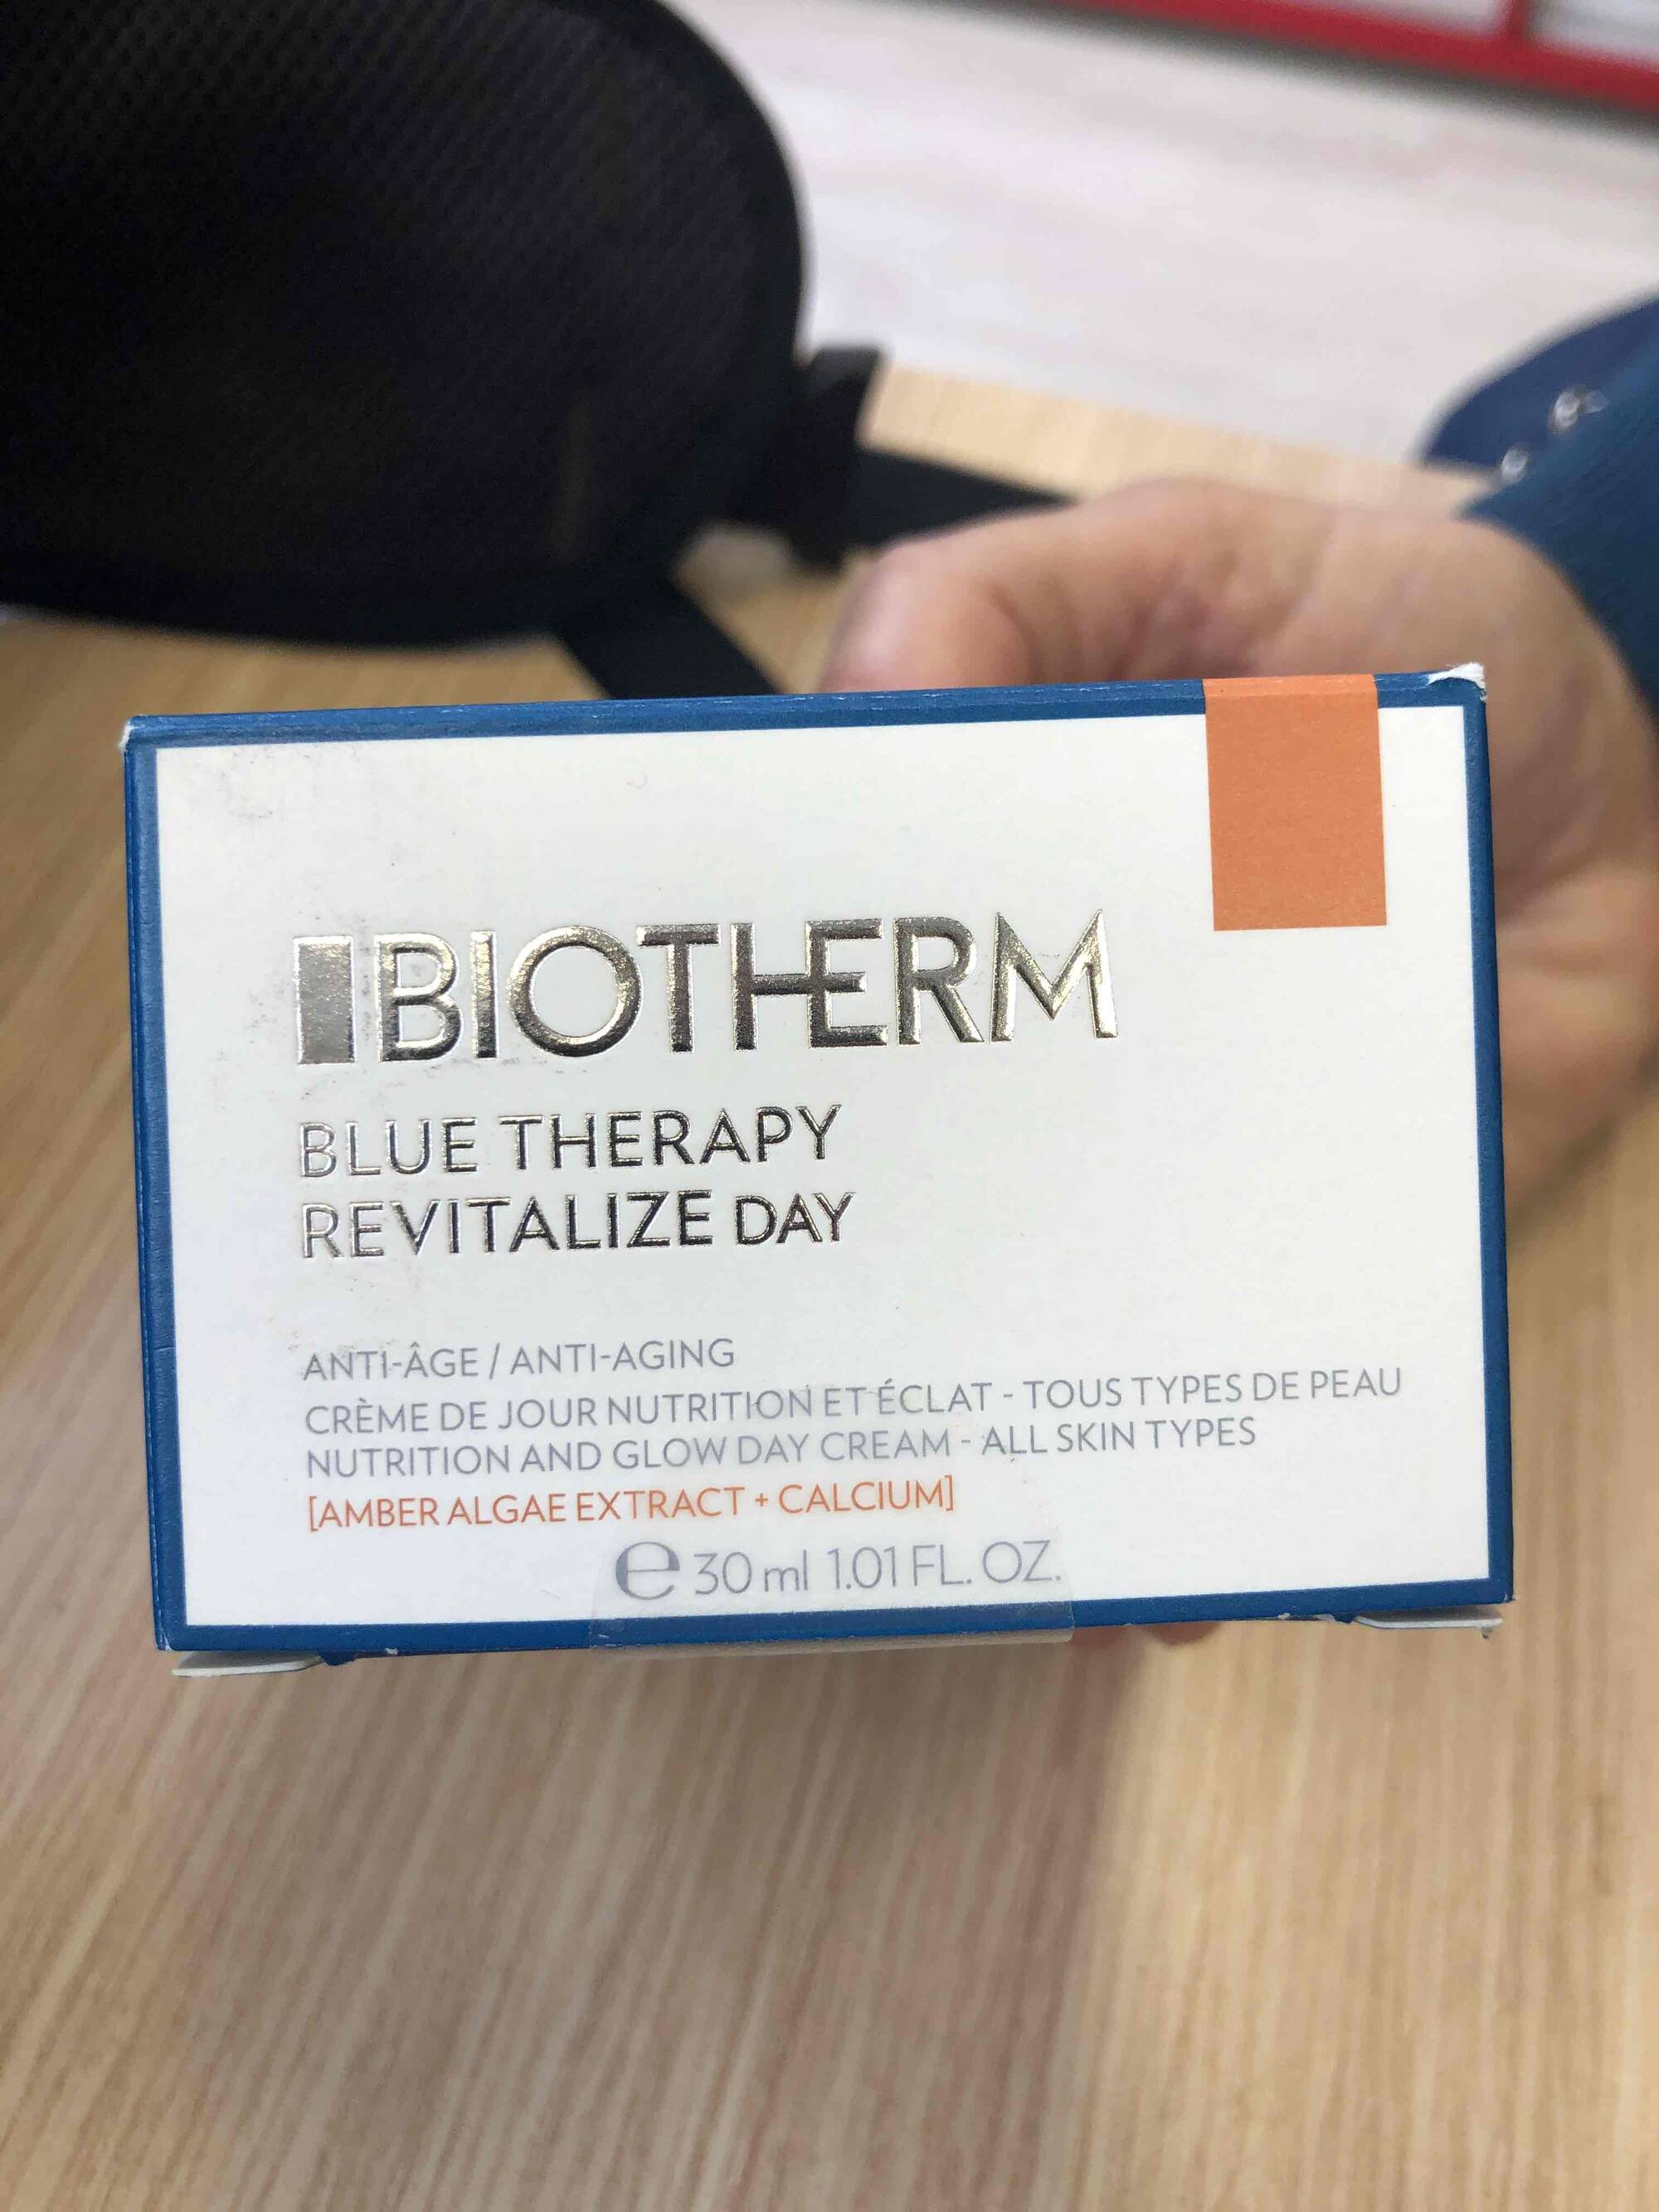 BIOTHERM - Blue therapy revitalize day - Crème de jour nutrition et éclat